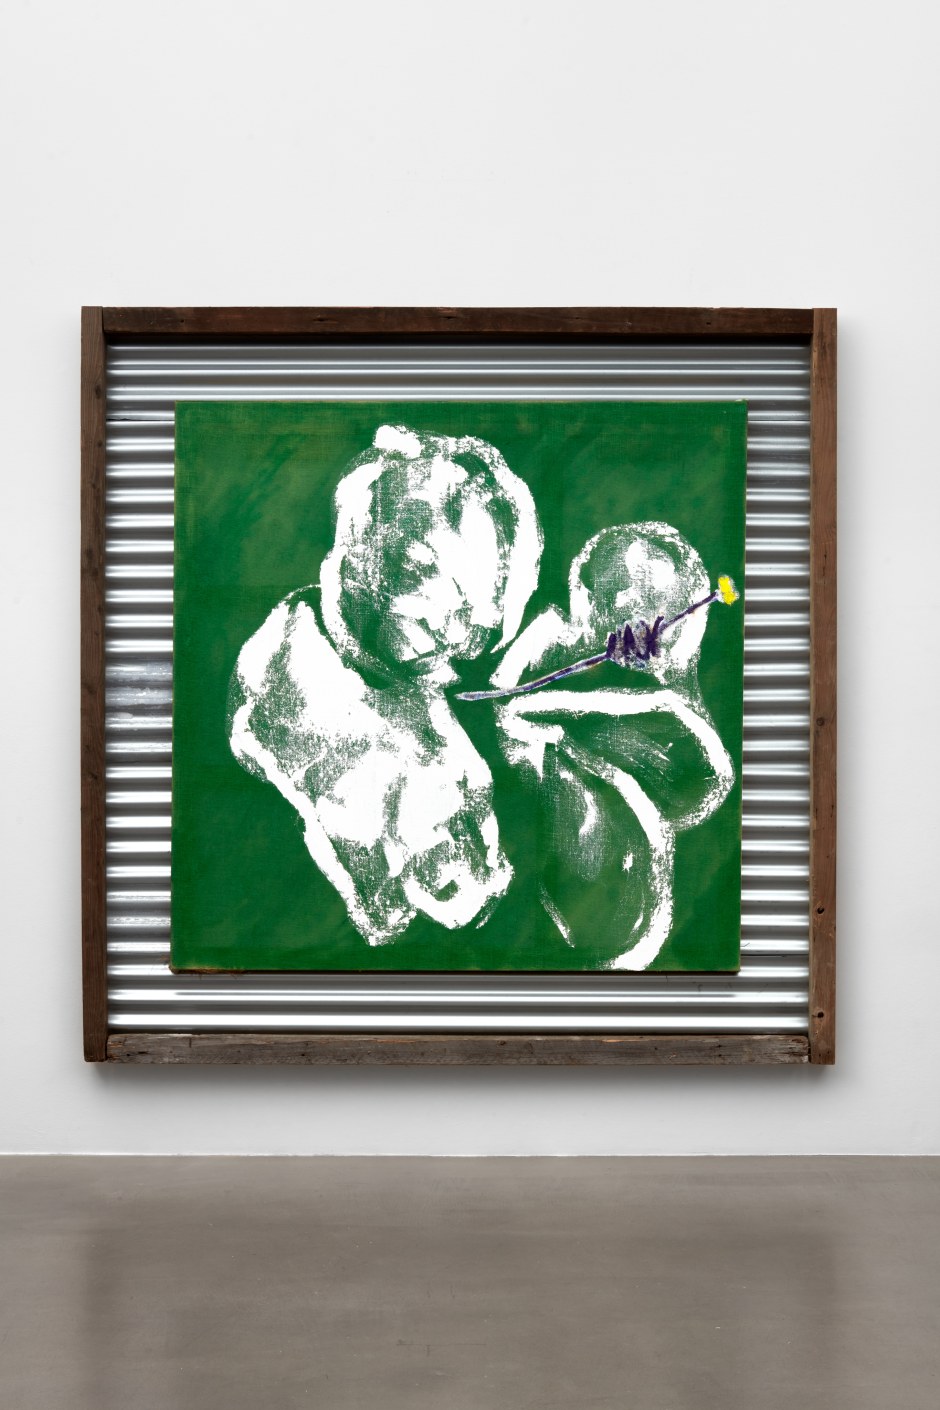 Alvaro Barrington  Brazil, 2021  mixed media on burlap in artist's frame  site size: 170 x 170 x 5 cm / 66 ⅞ x 66 ⅞ x 2 in frame size: 226 x 226 x 10 cm / 89 x 89 x 4 in